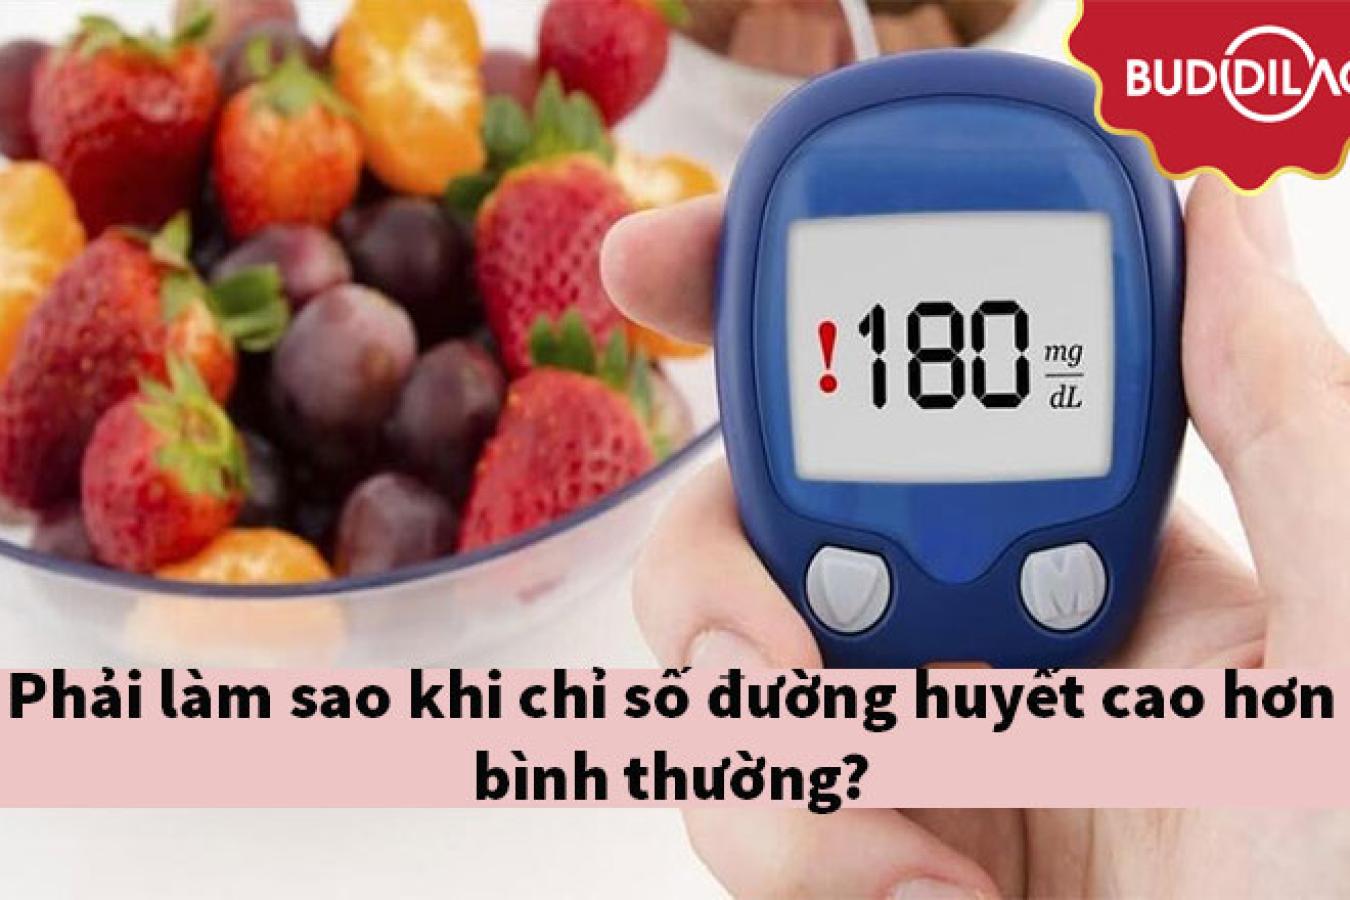 Phải làm sao khi chỉ số đường huyết cao hơn bình thường?